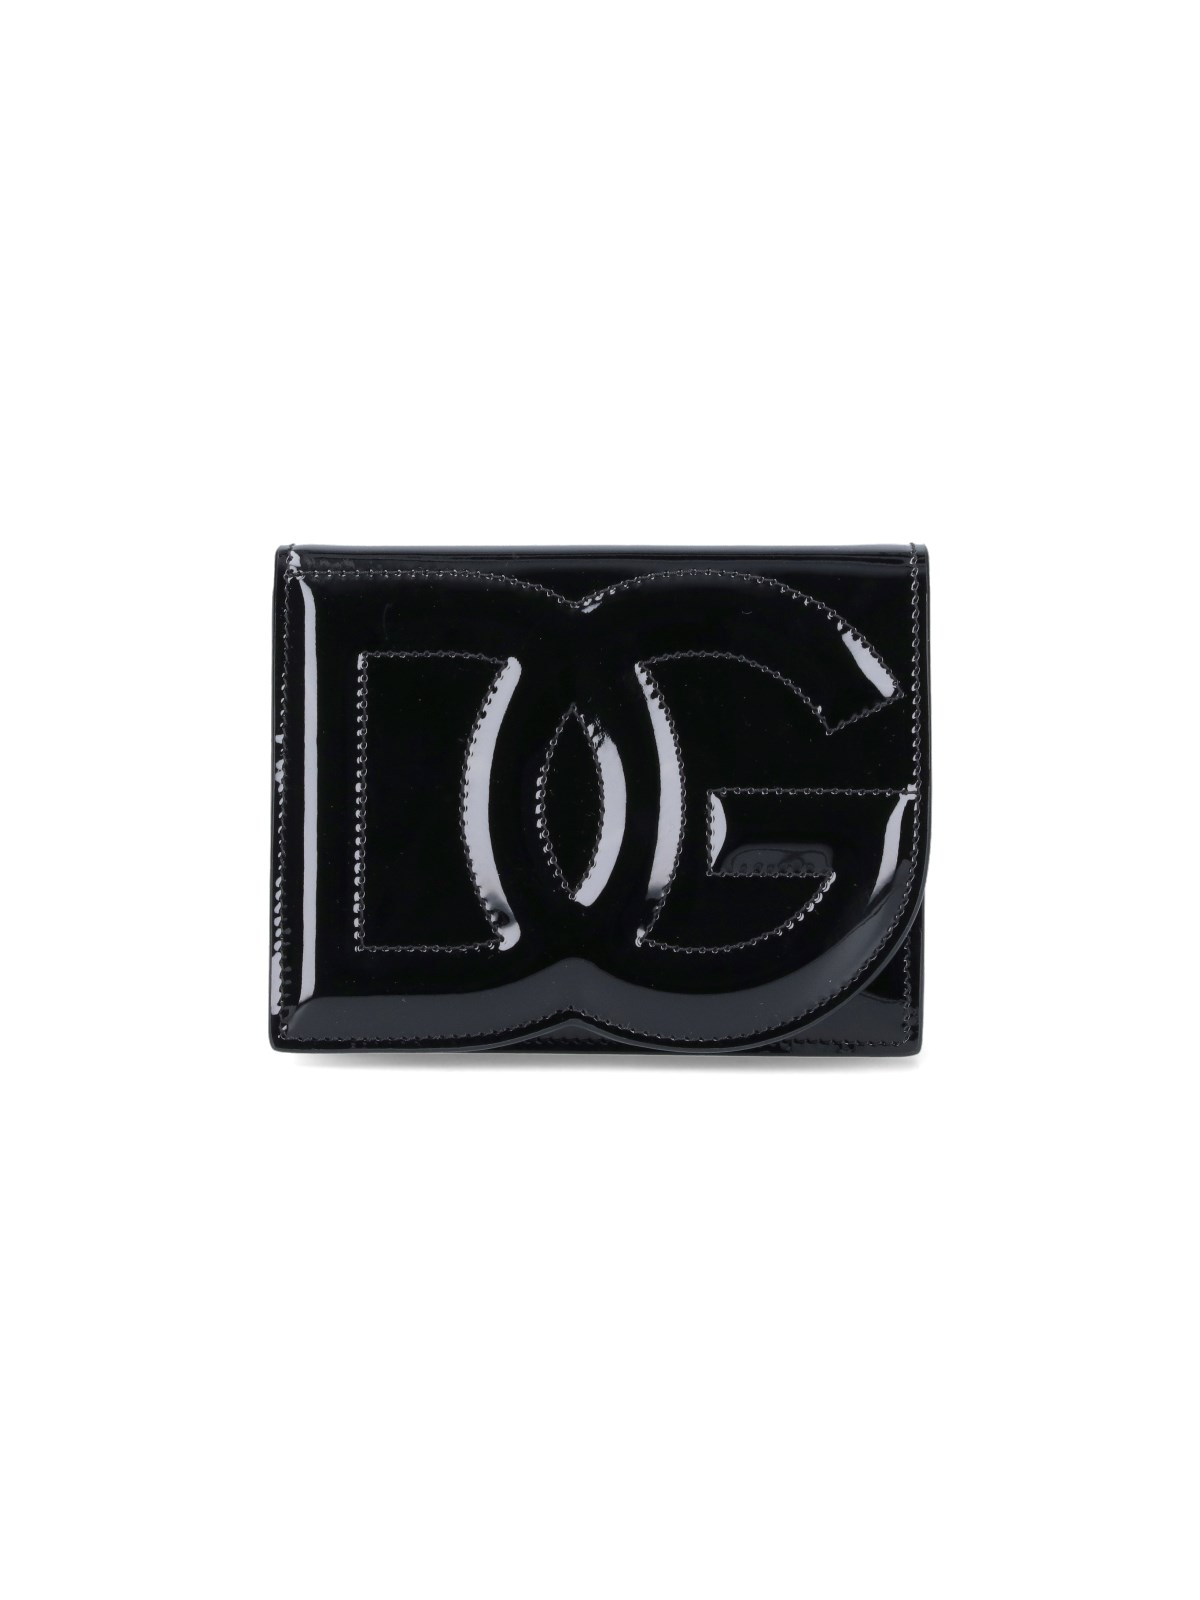 Dolce & Gabbana 'dg' Small Shoulder Bag In Black  